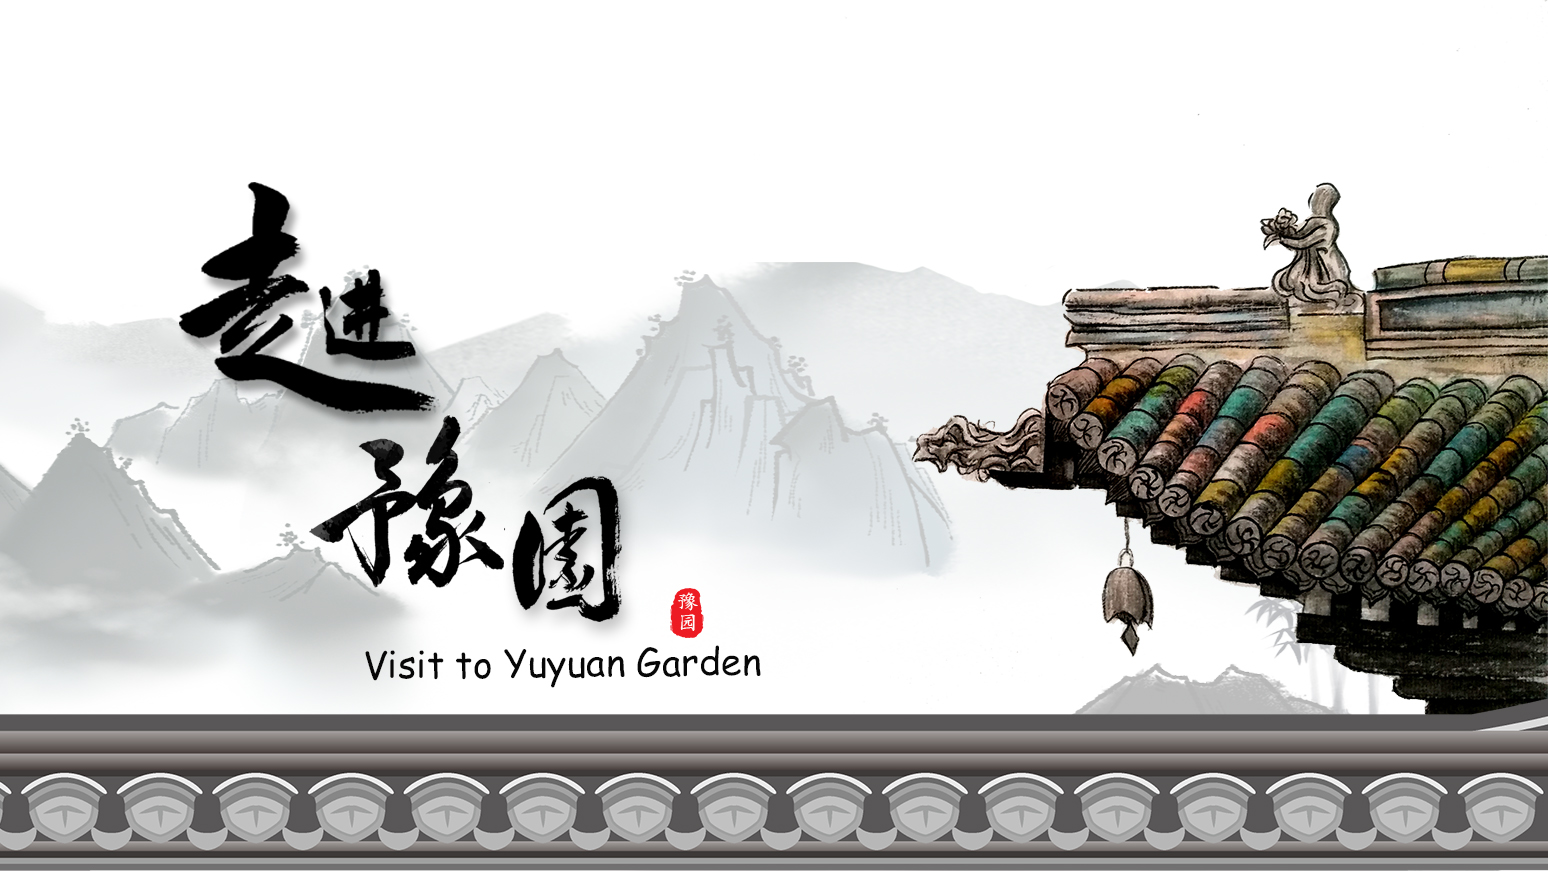 Visit to Yuyuan Garden